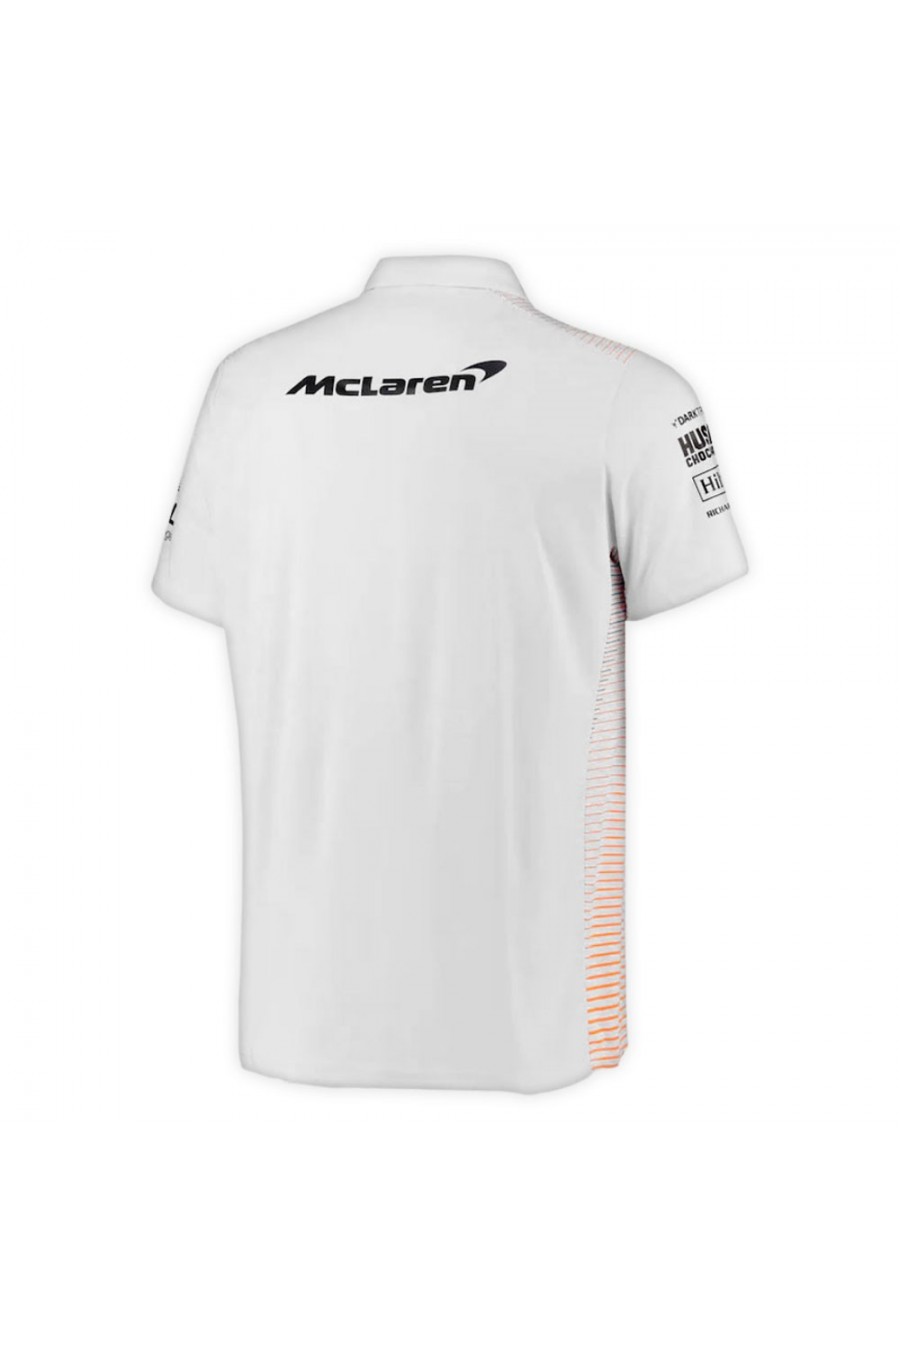 Polo McLaren F1